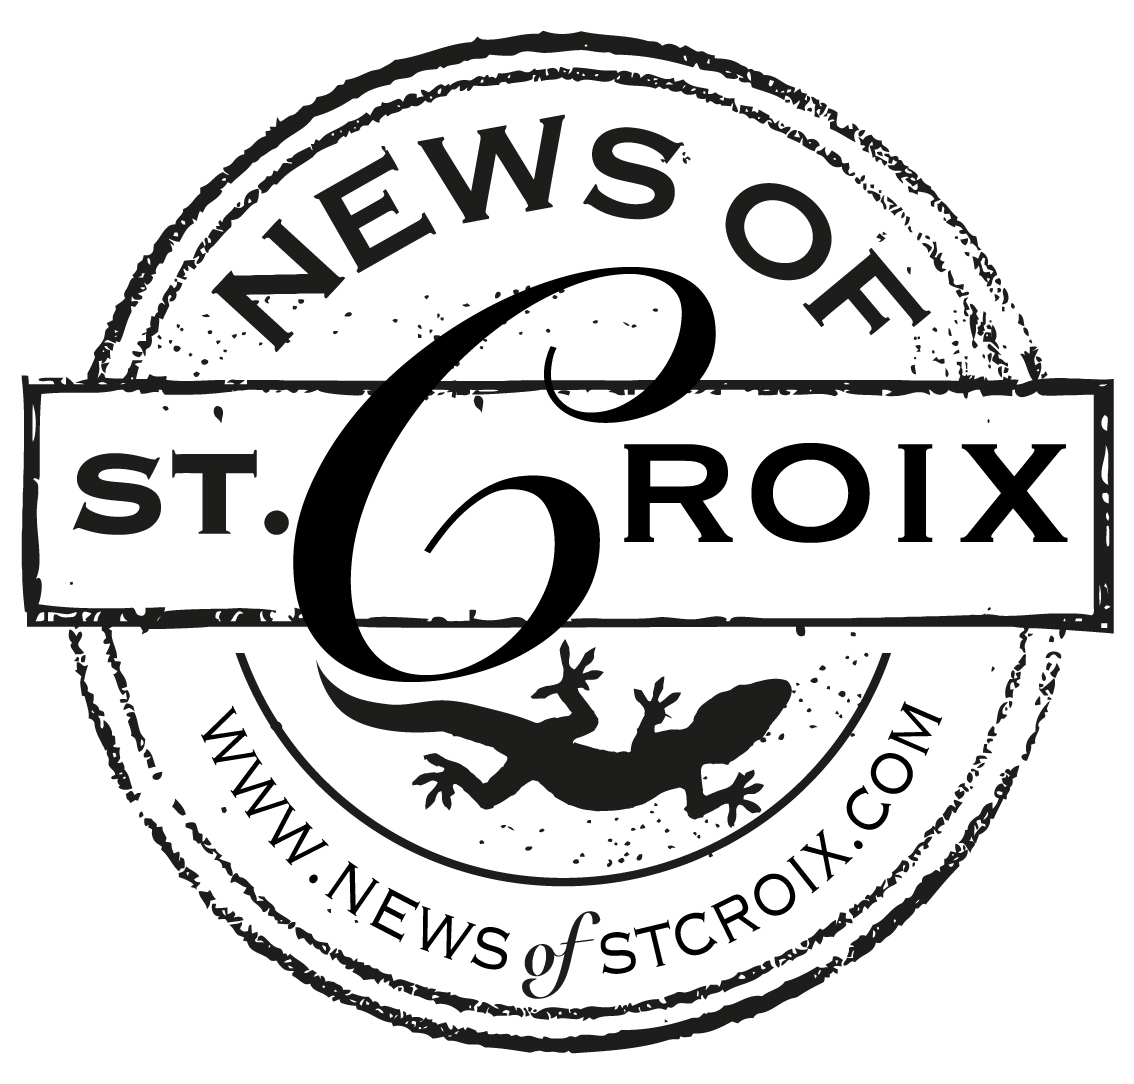 News of St. Croix